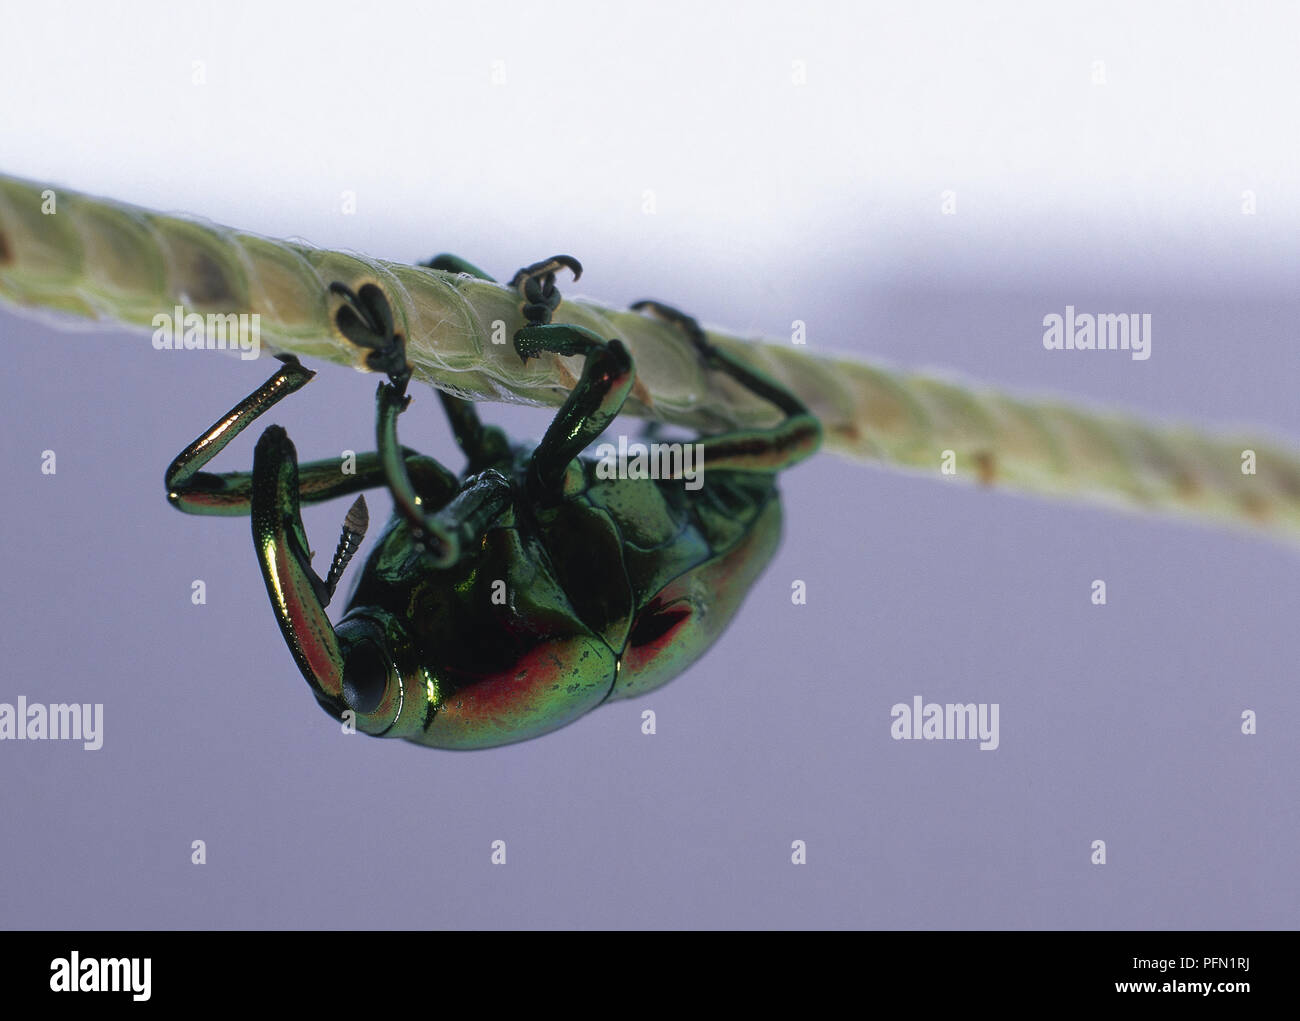 Jewel Rüsselkäfer mit langen Vorspringenden Schnauze, kurze gelenkige Beine und eine schillernde, metallische aussehende Grüne und rote Körper, Balancieren auf grünen Stiel. Stockfoto